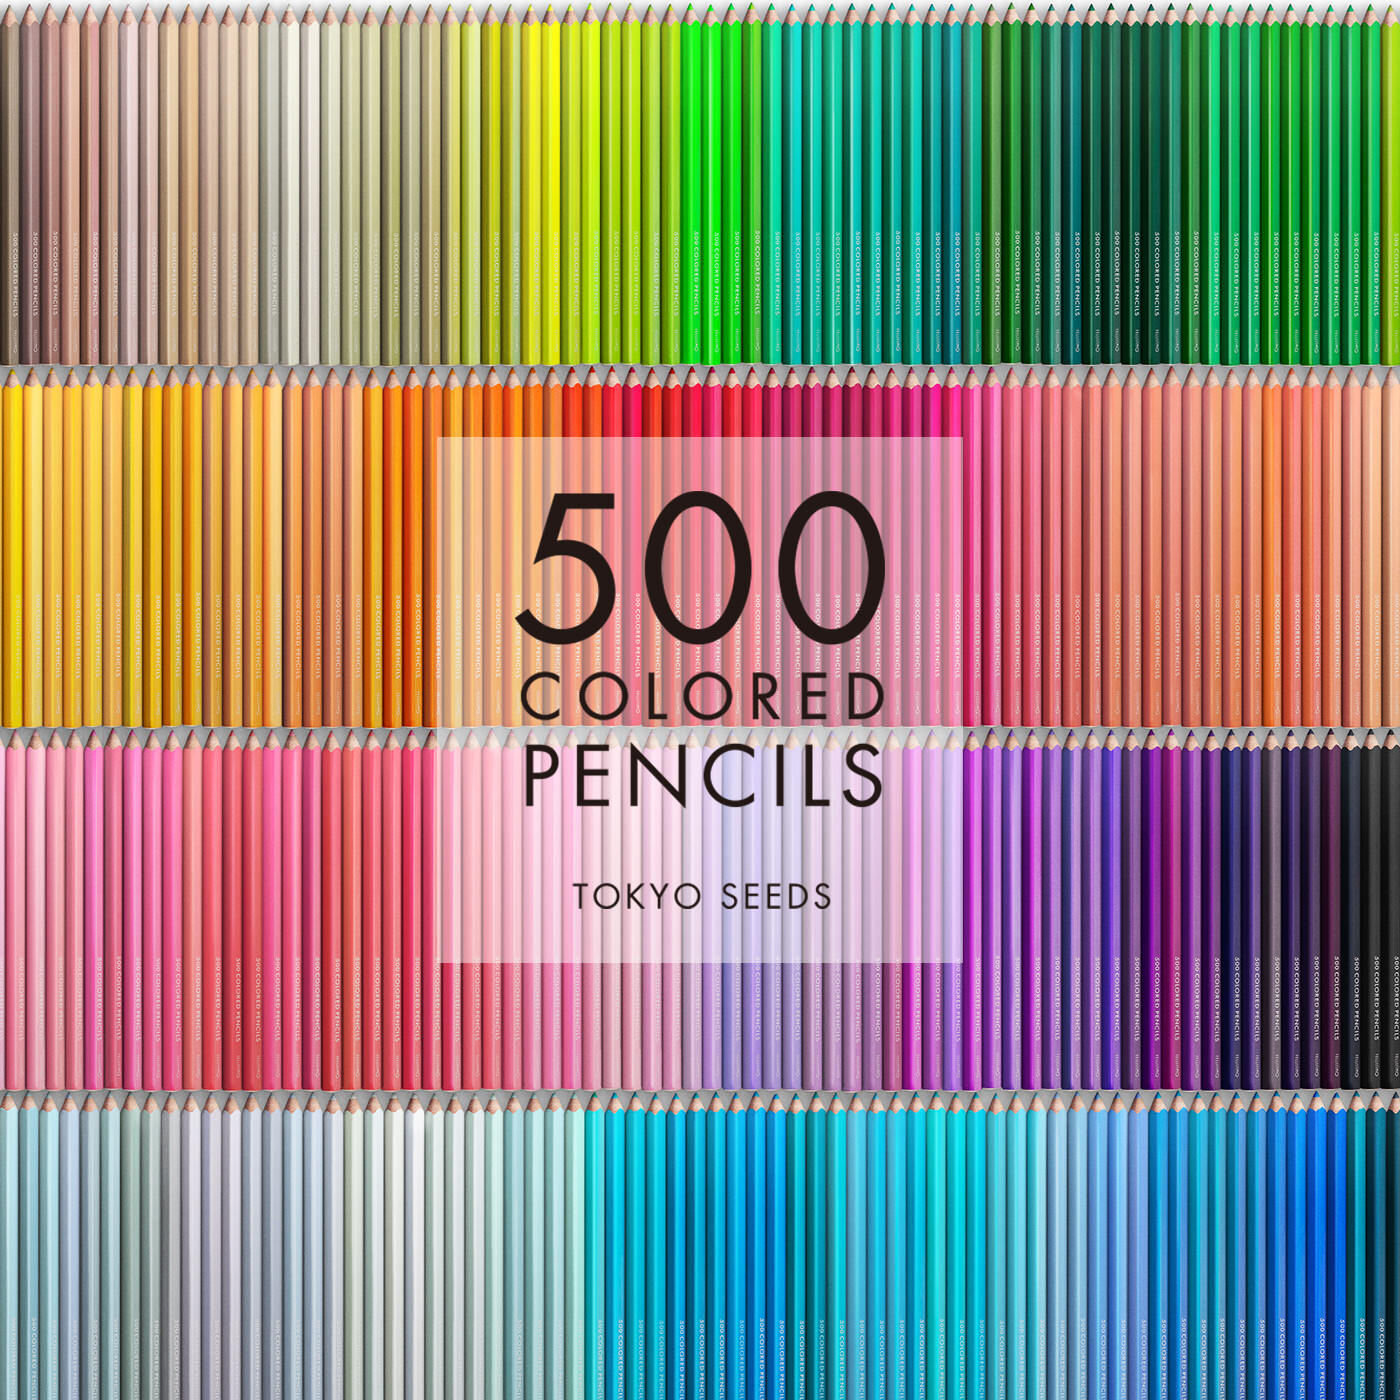 Real Stock|【41/500 MISS MANICURE】500色の色えんぴつ TOKYO SEEDS|1992年、世界初の「500色」という膨大な色数の色えんぴつが誕生して以来、その販売数は発売当初から合わせると、世界55ヵ国10万セット以上。今回、メイド・イン・ジャパンにこだわり、すべてが新しく生まれ変わって登場しました。